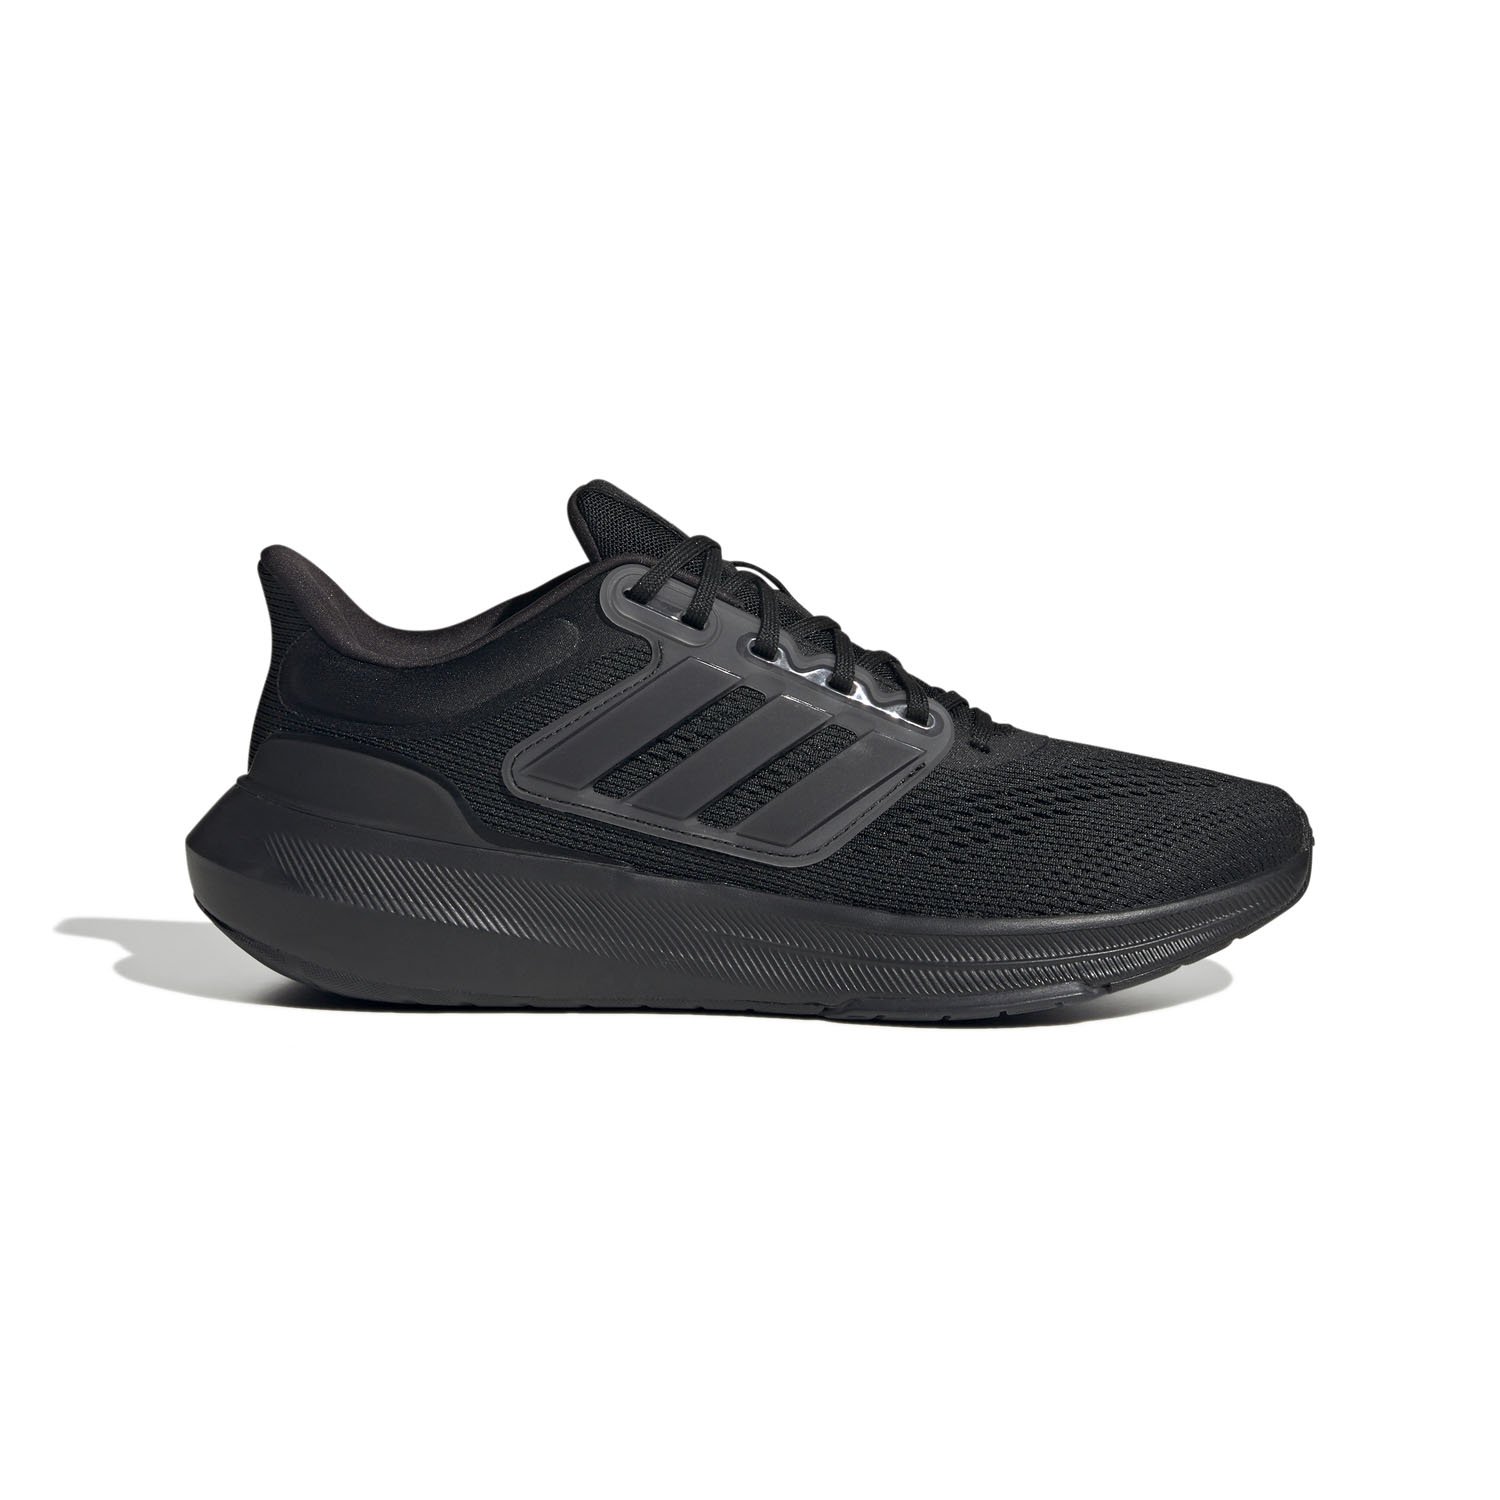 Adidas Ultrabounce Erkek Koşu Ayakkabısı - Siyah - 1